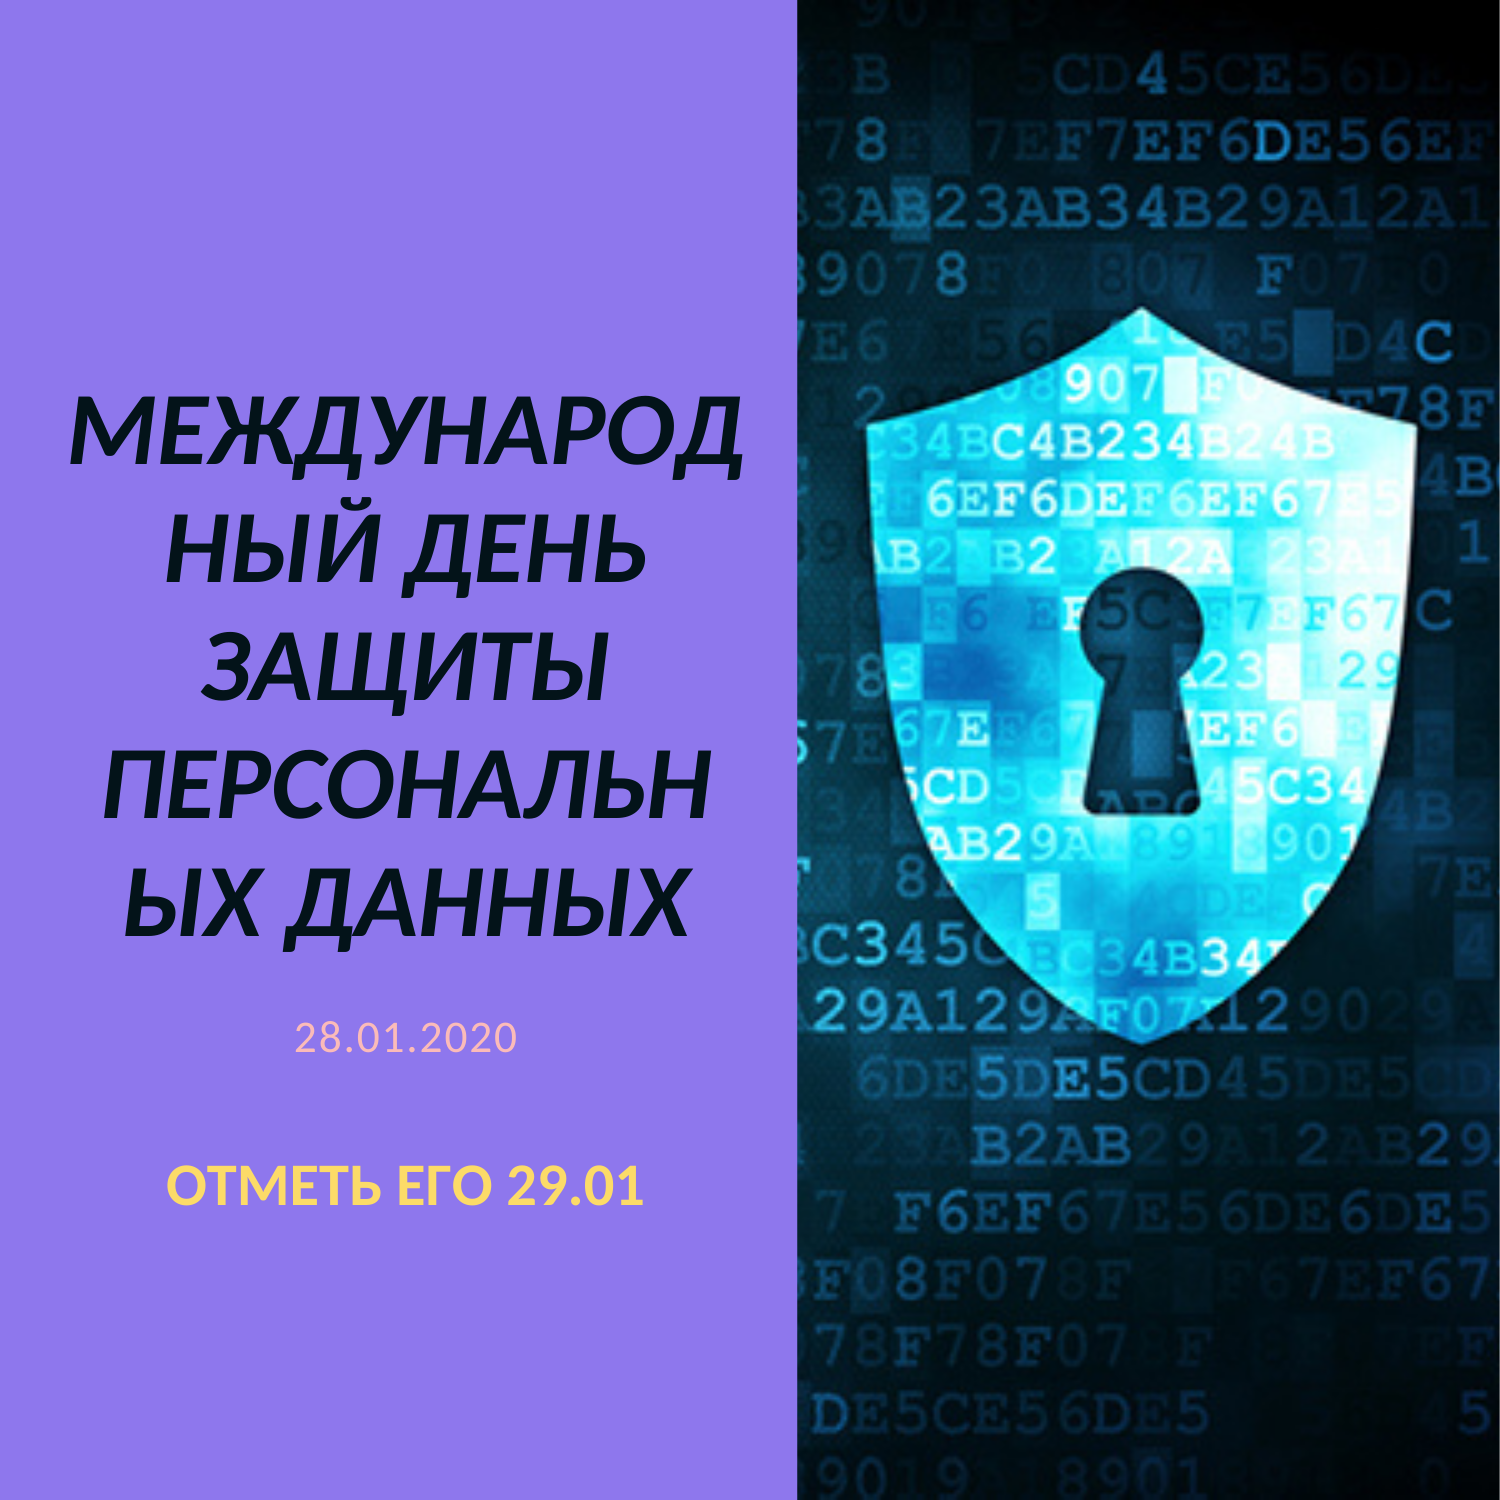 международный день защиты персональных данных